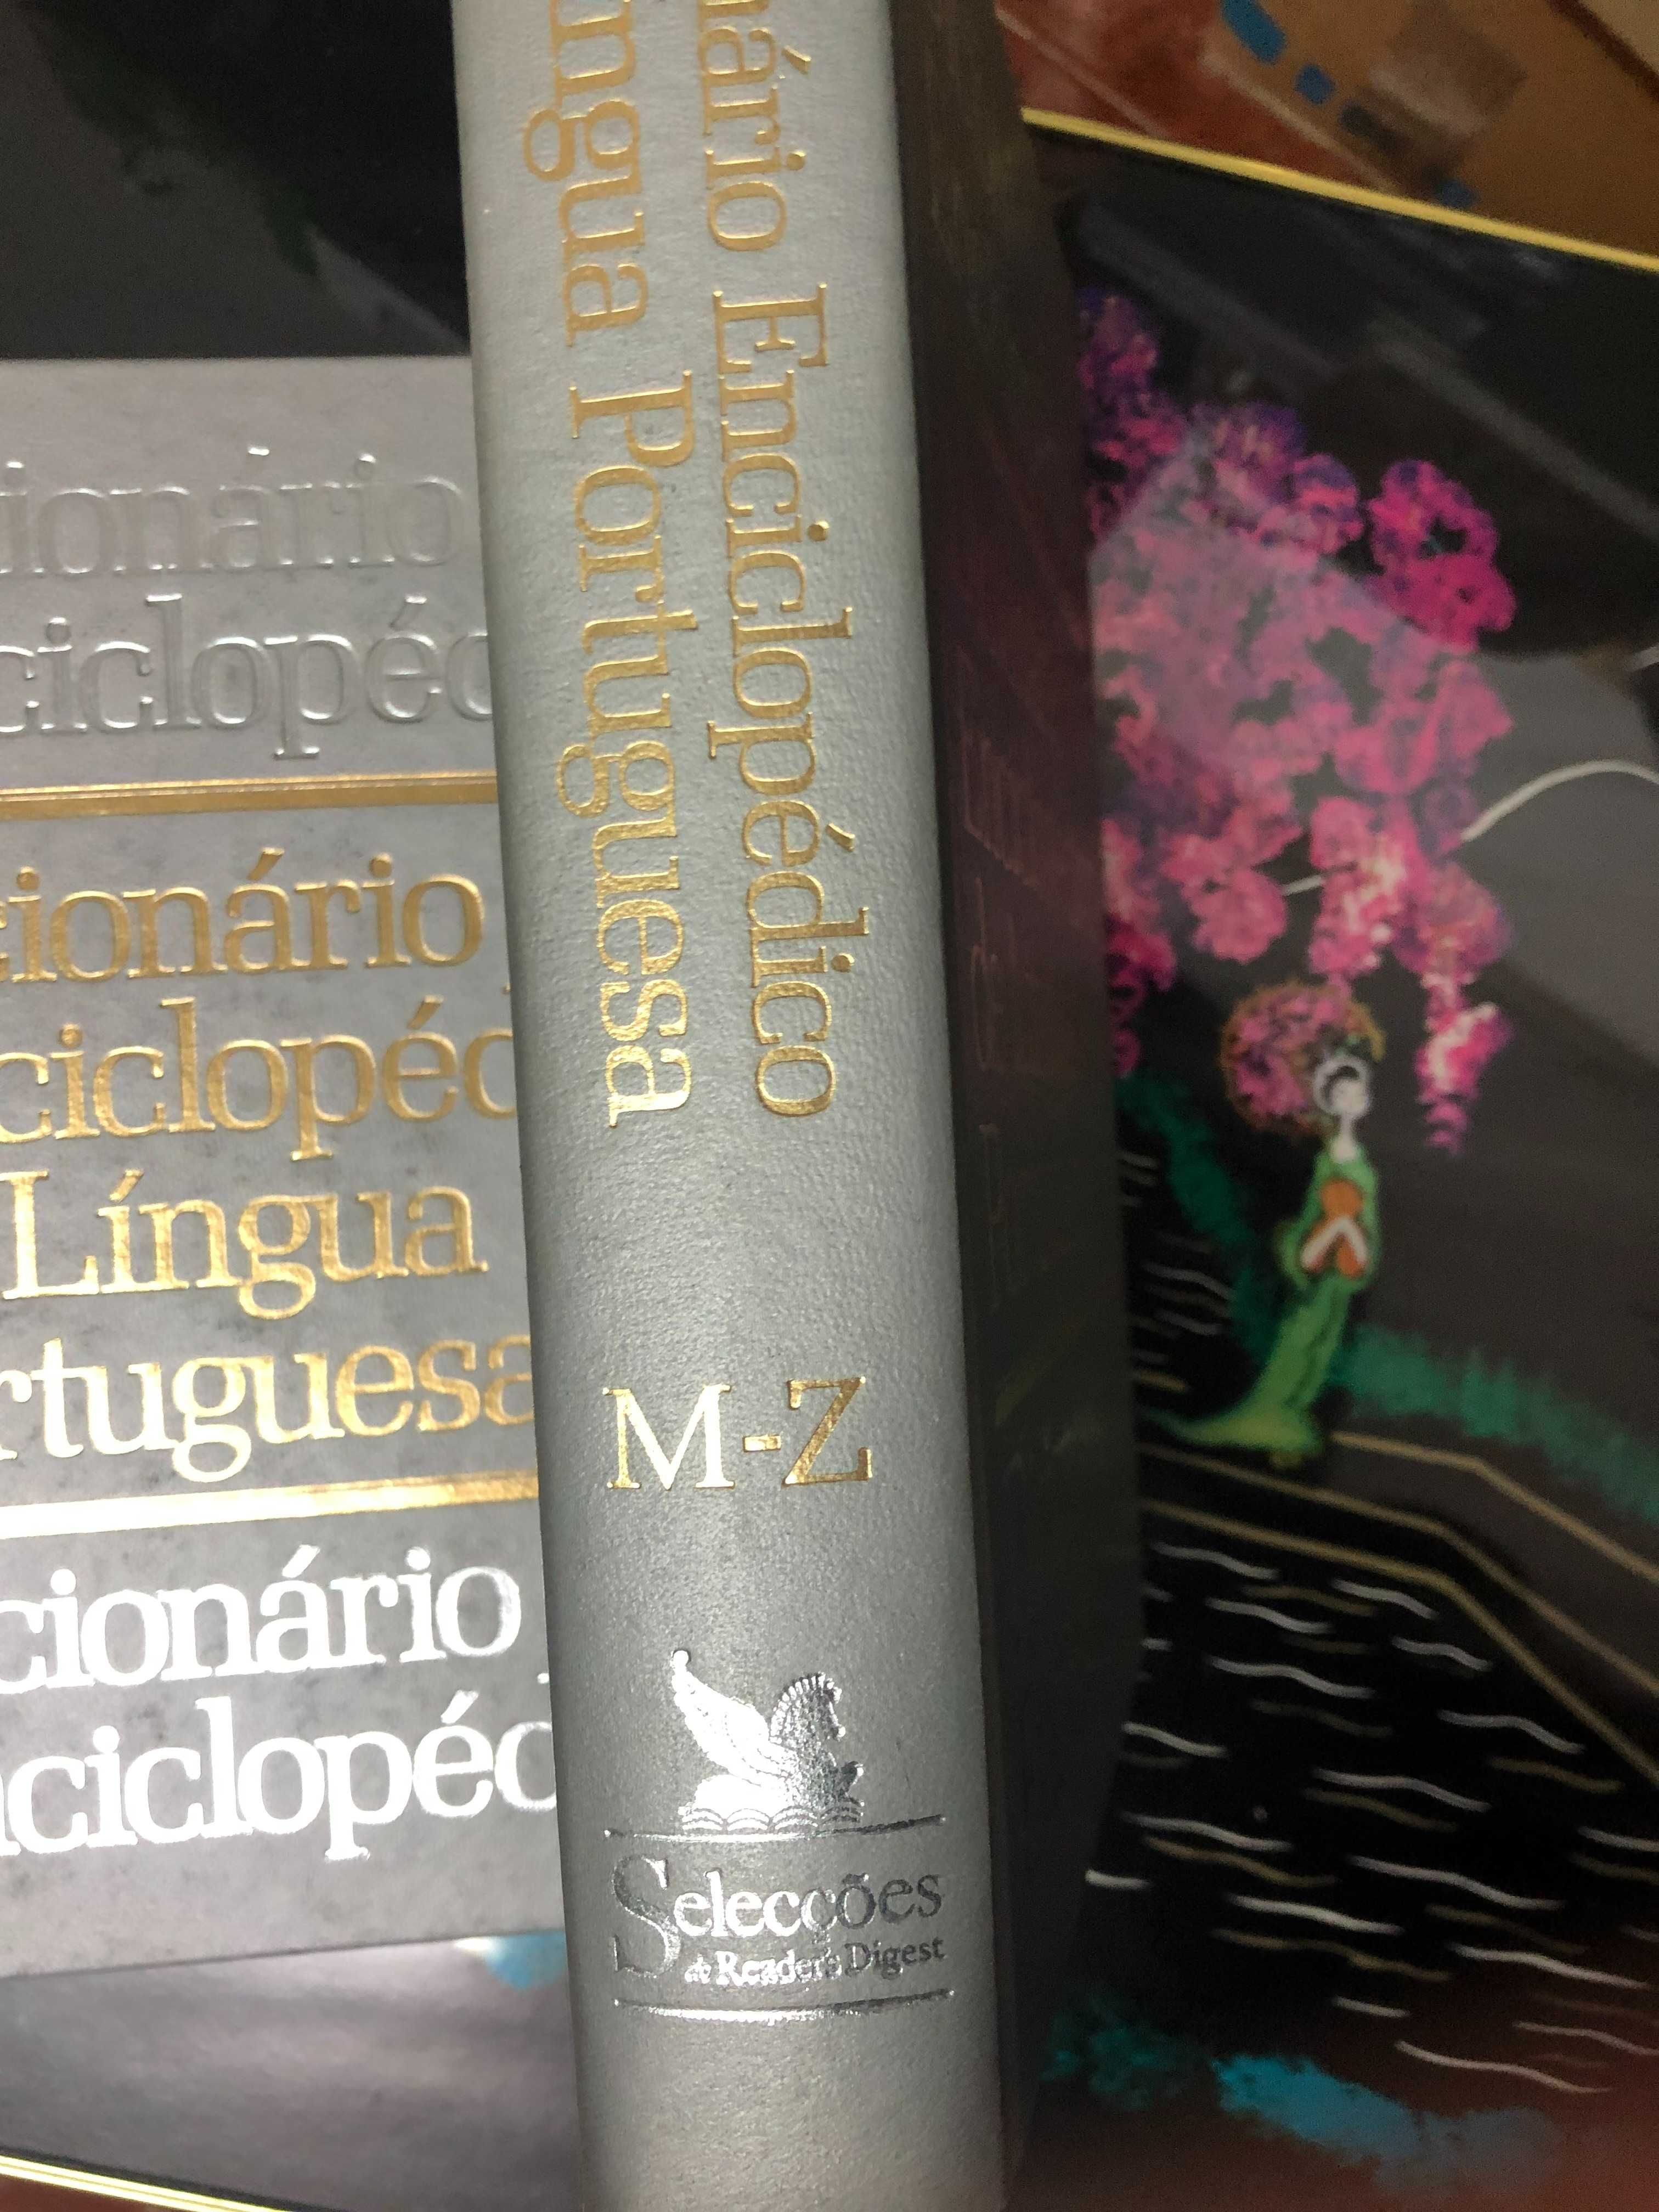 Dicionário Enciclopédico da Língua Portuguesa